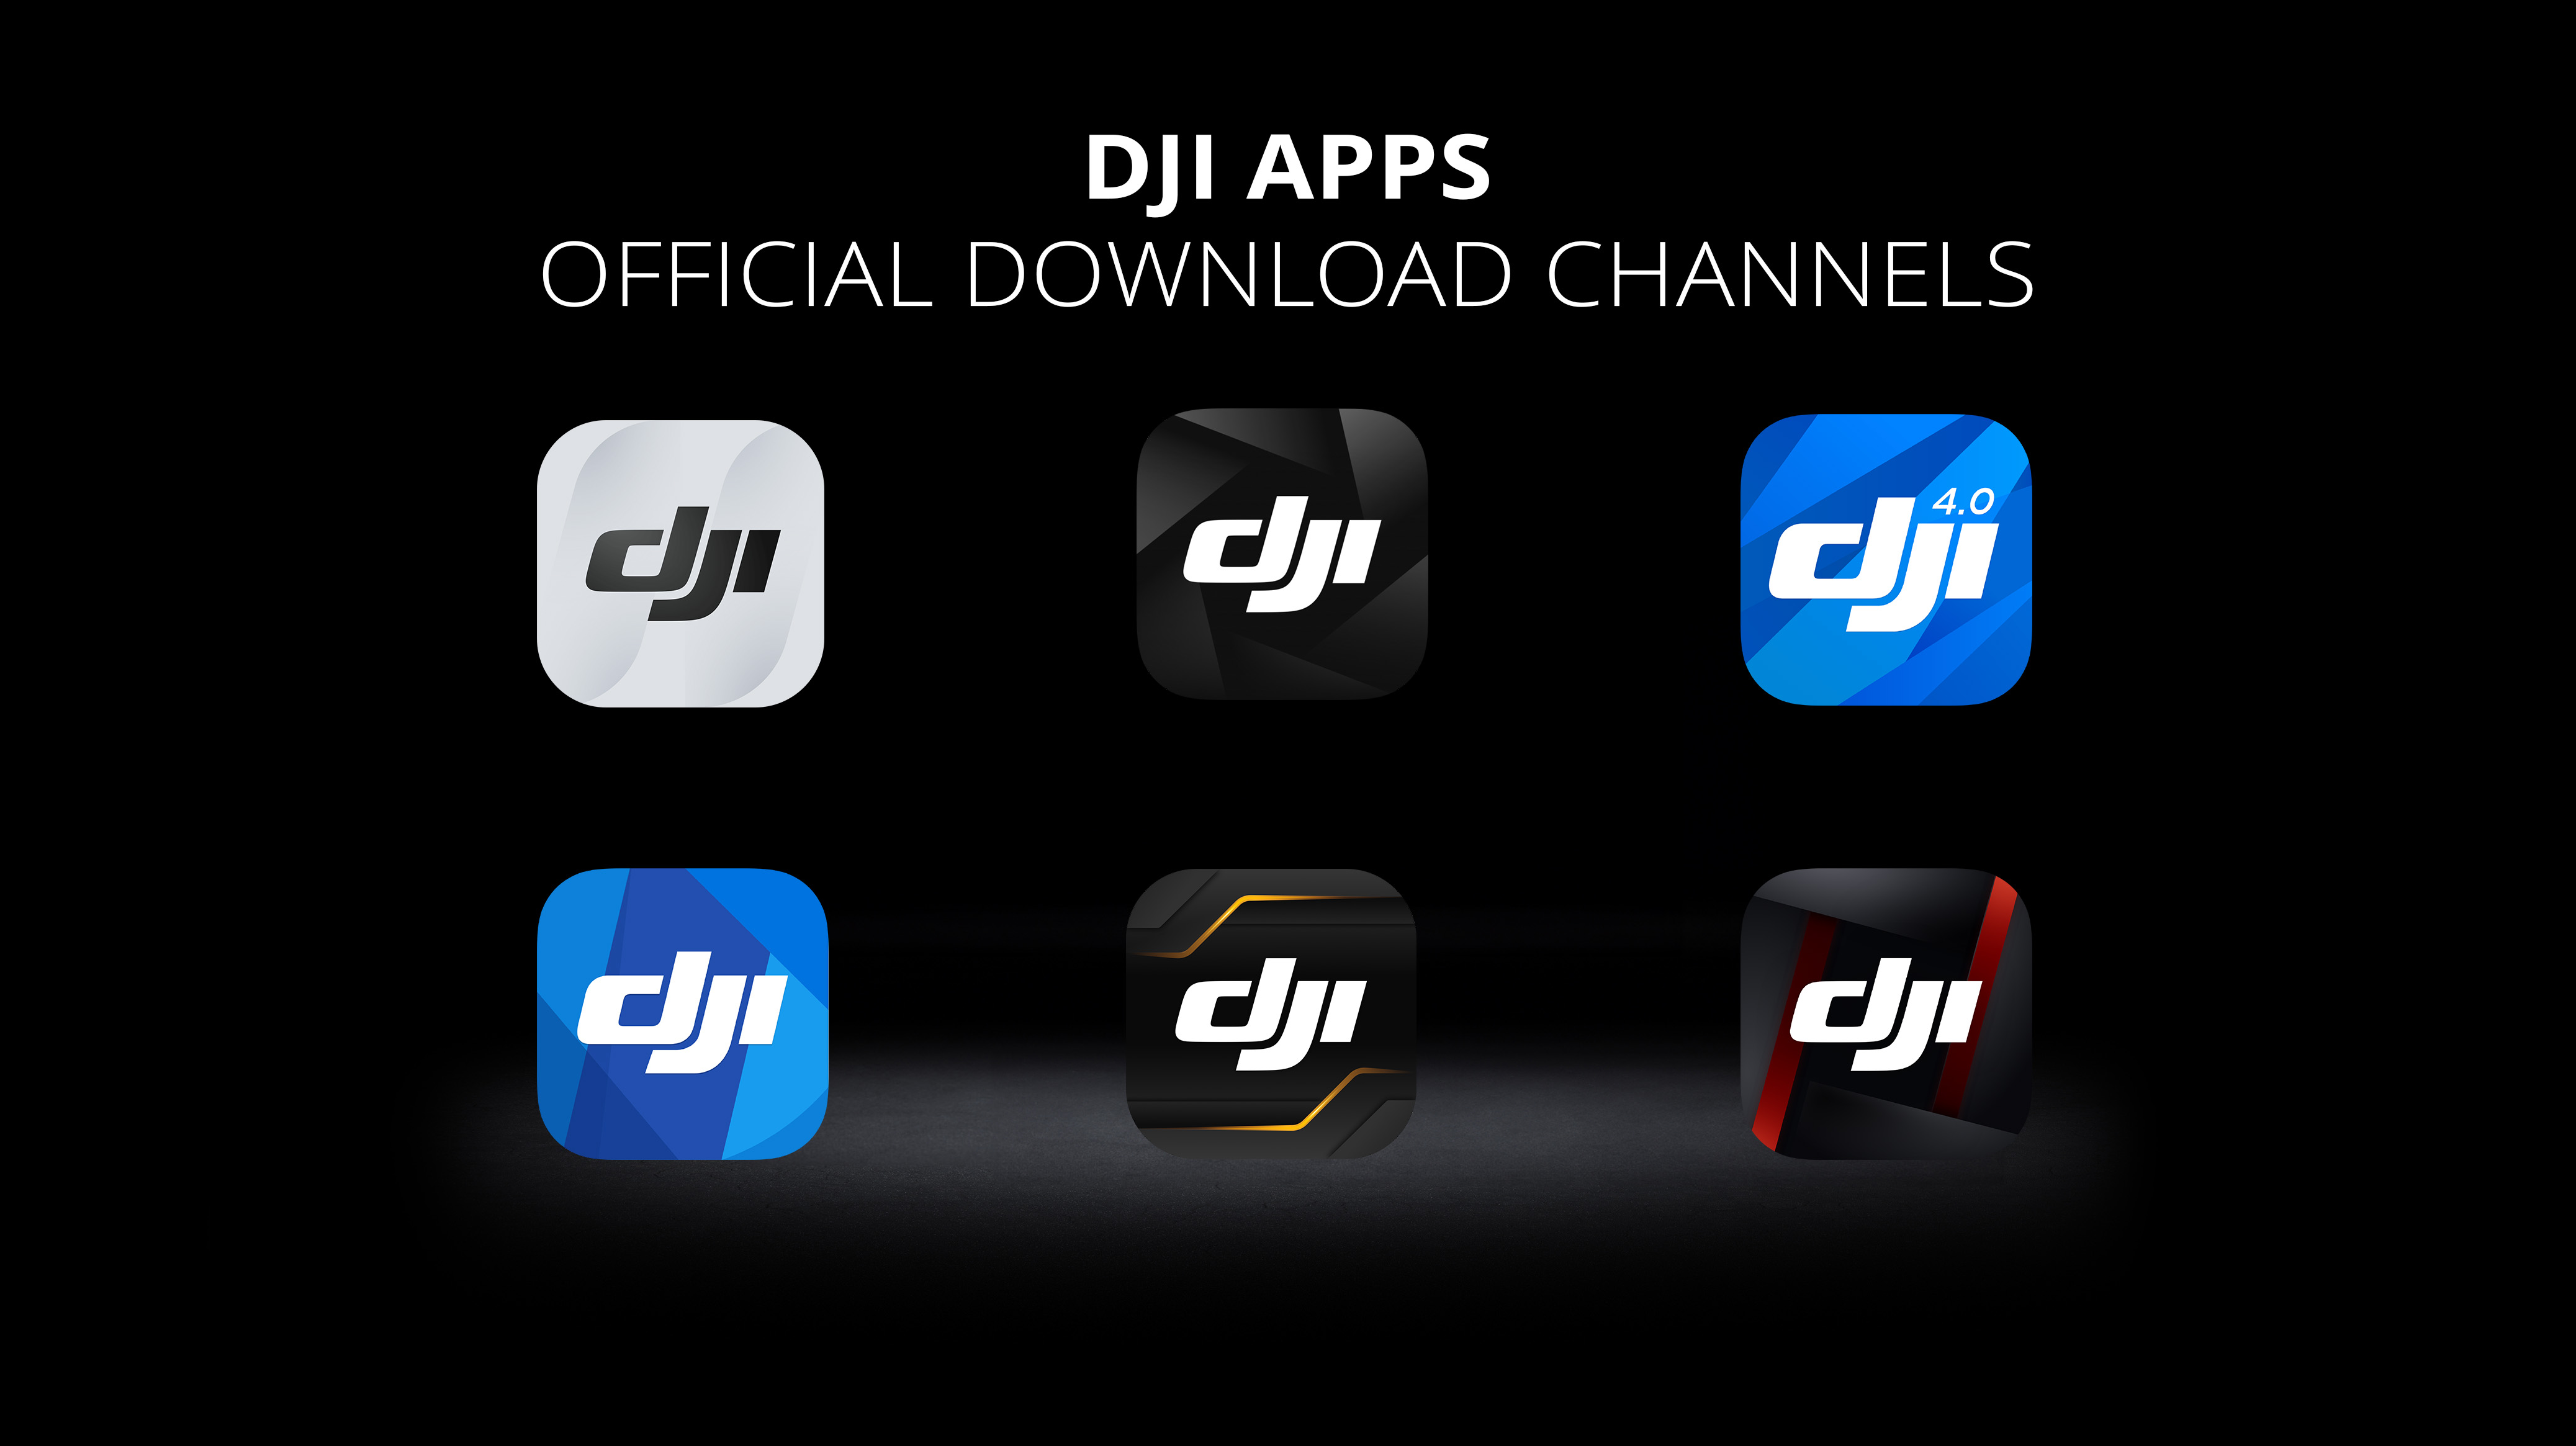 Officiële download kanaal voor DJI Apps